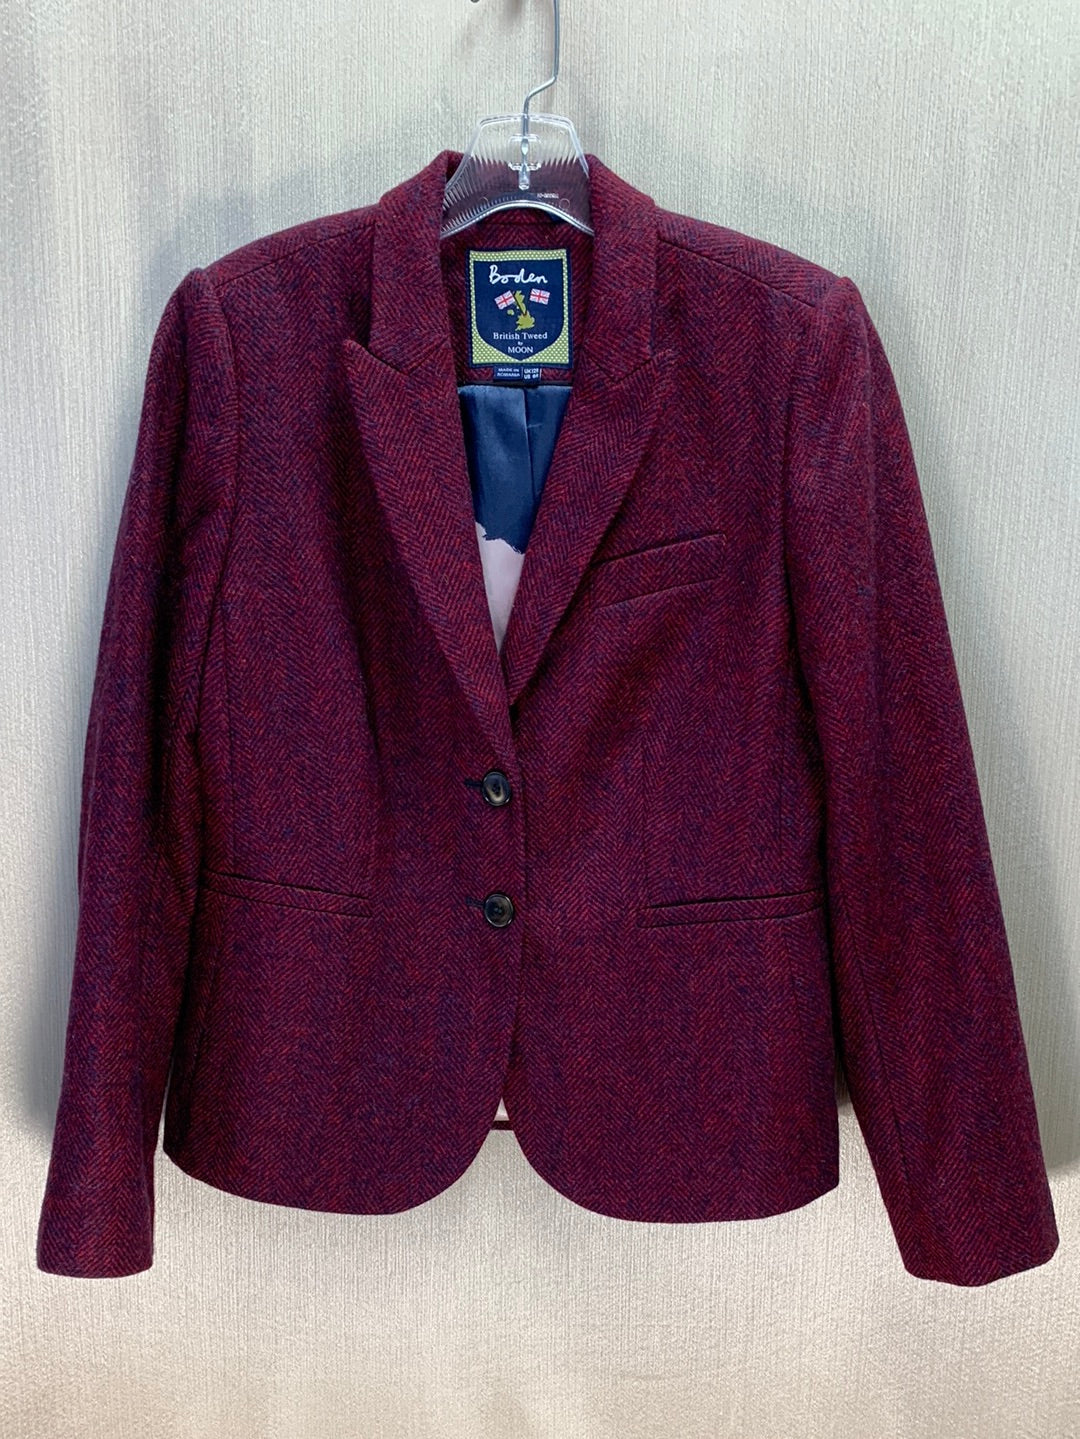 BODEN red blue Wool Herringbone British Tweed by Moon Jacket - US 8 | UK 12